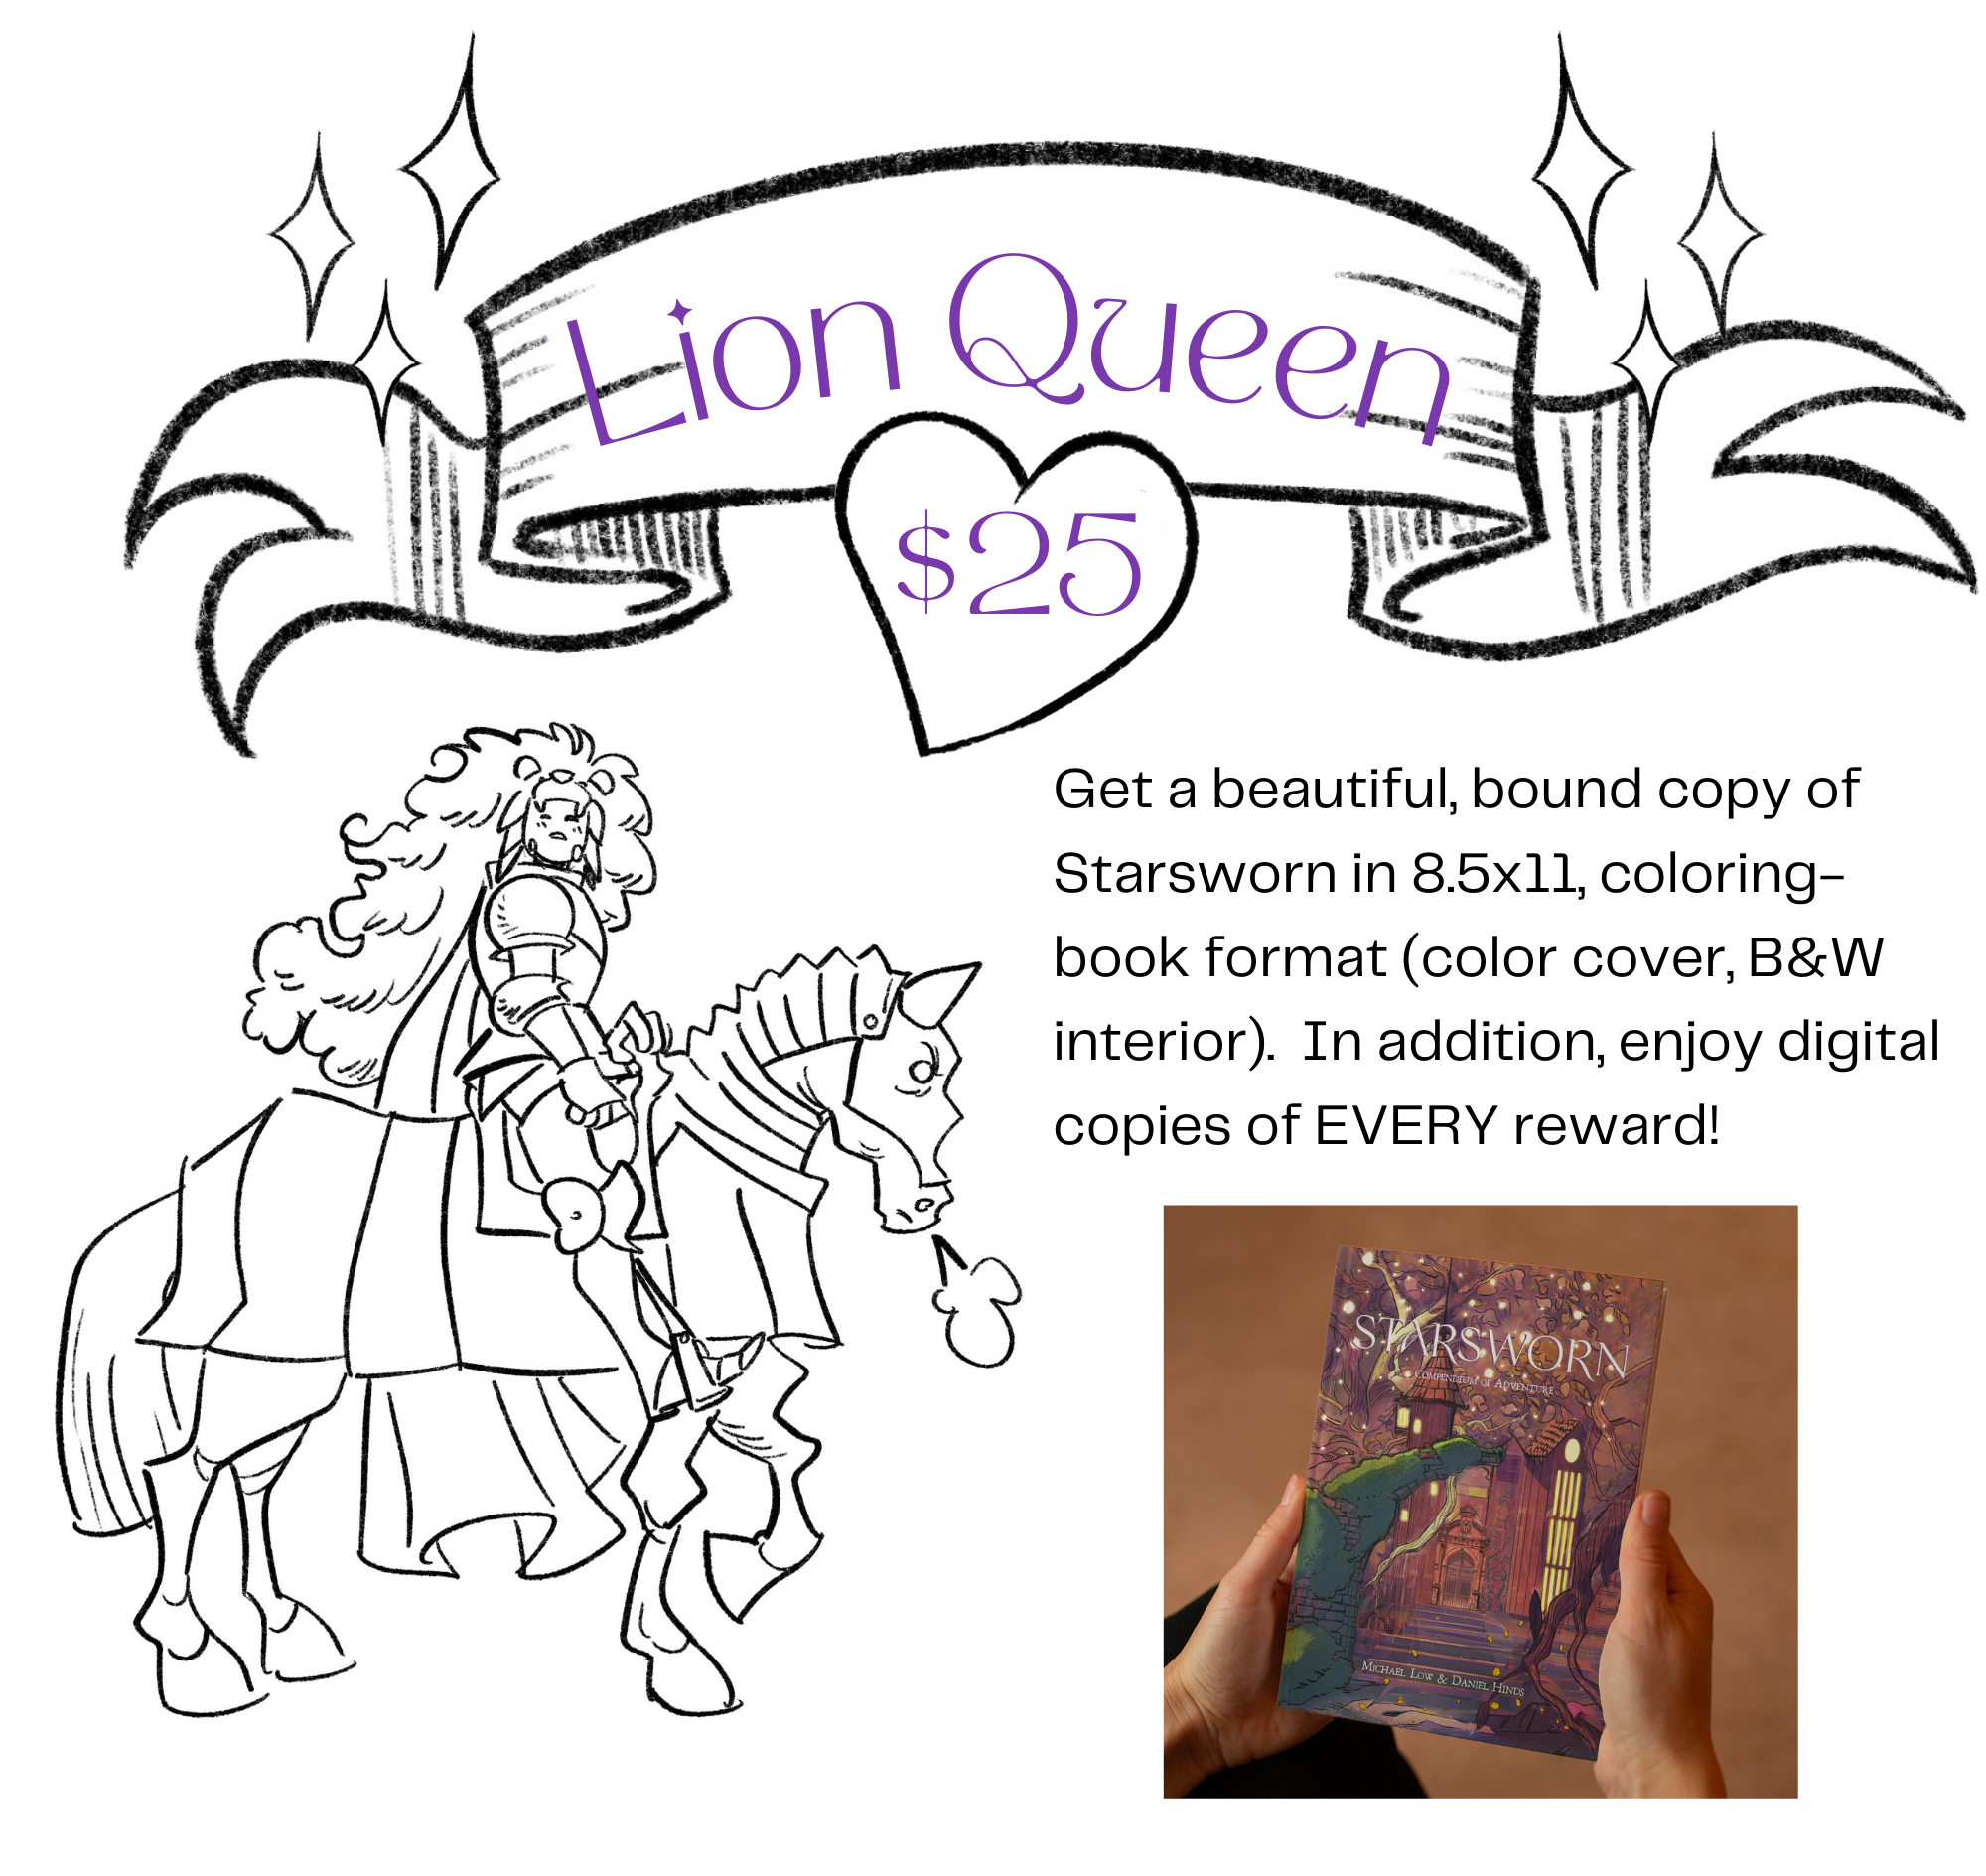 Starsworn - lion queen reward tier